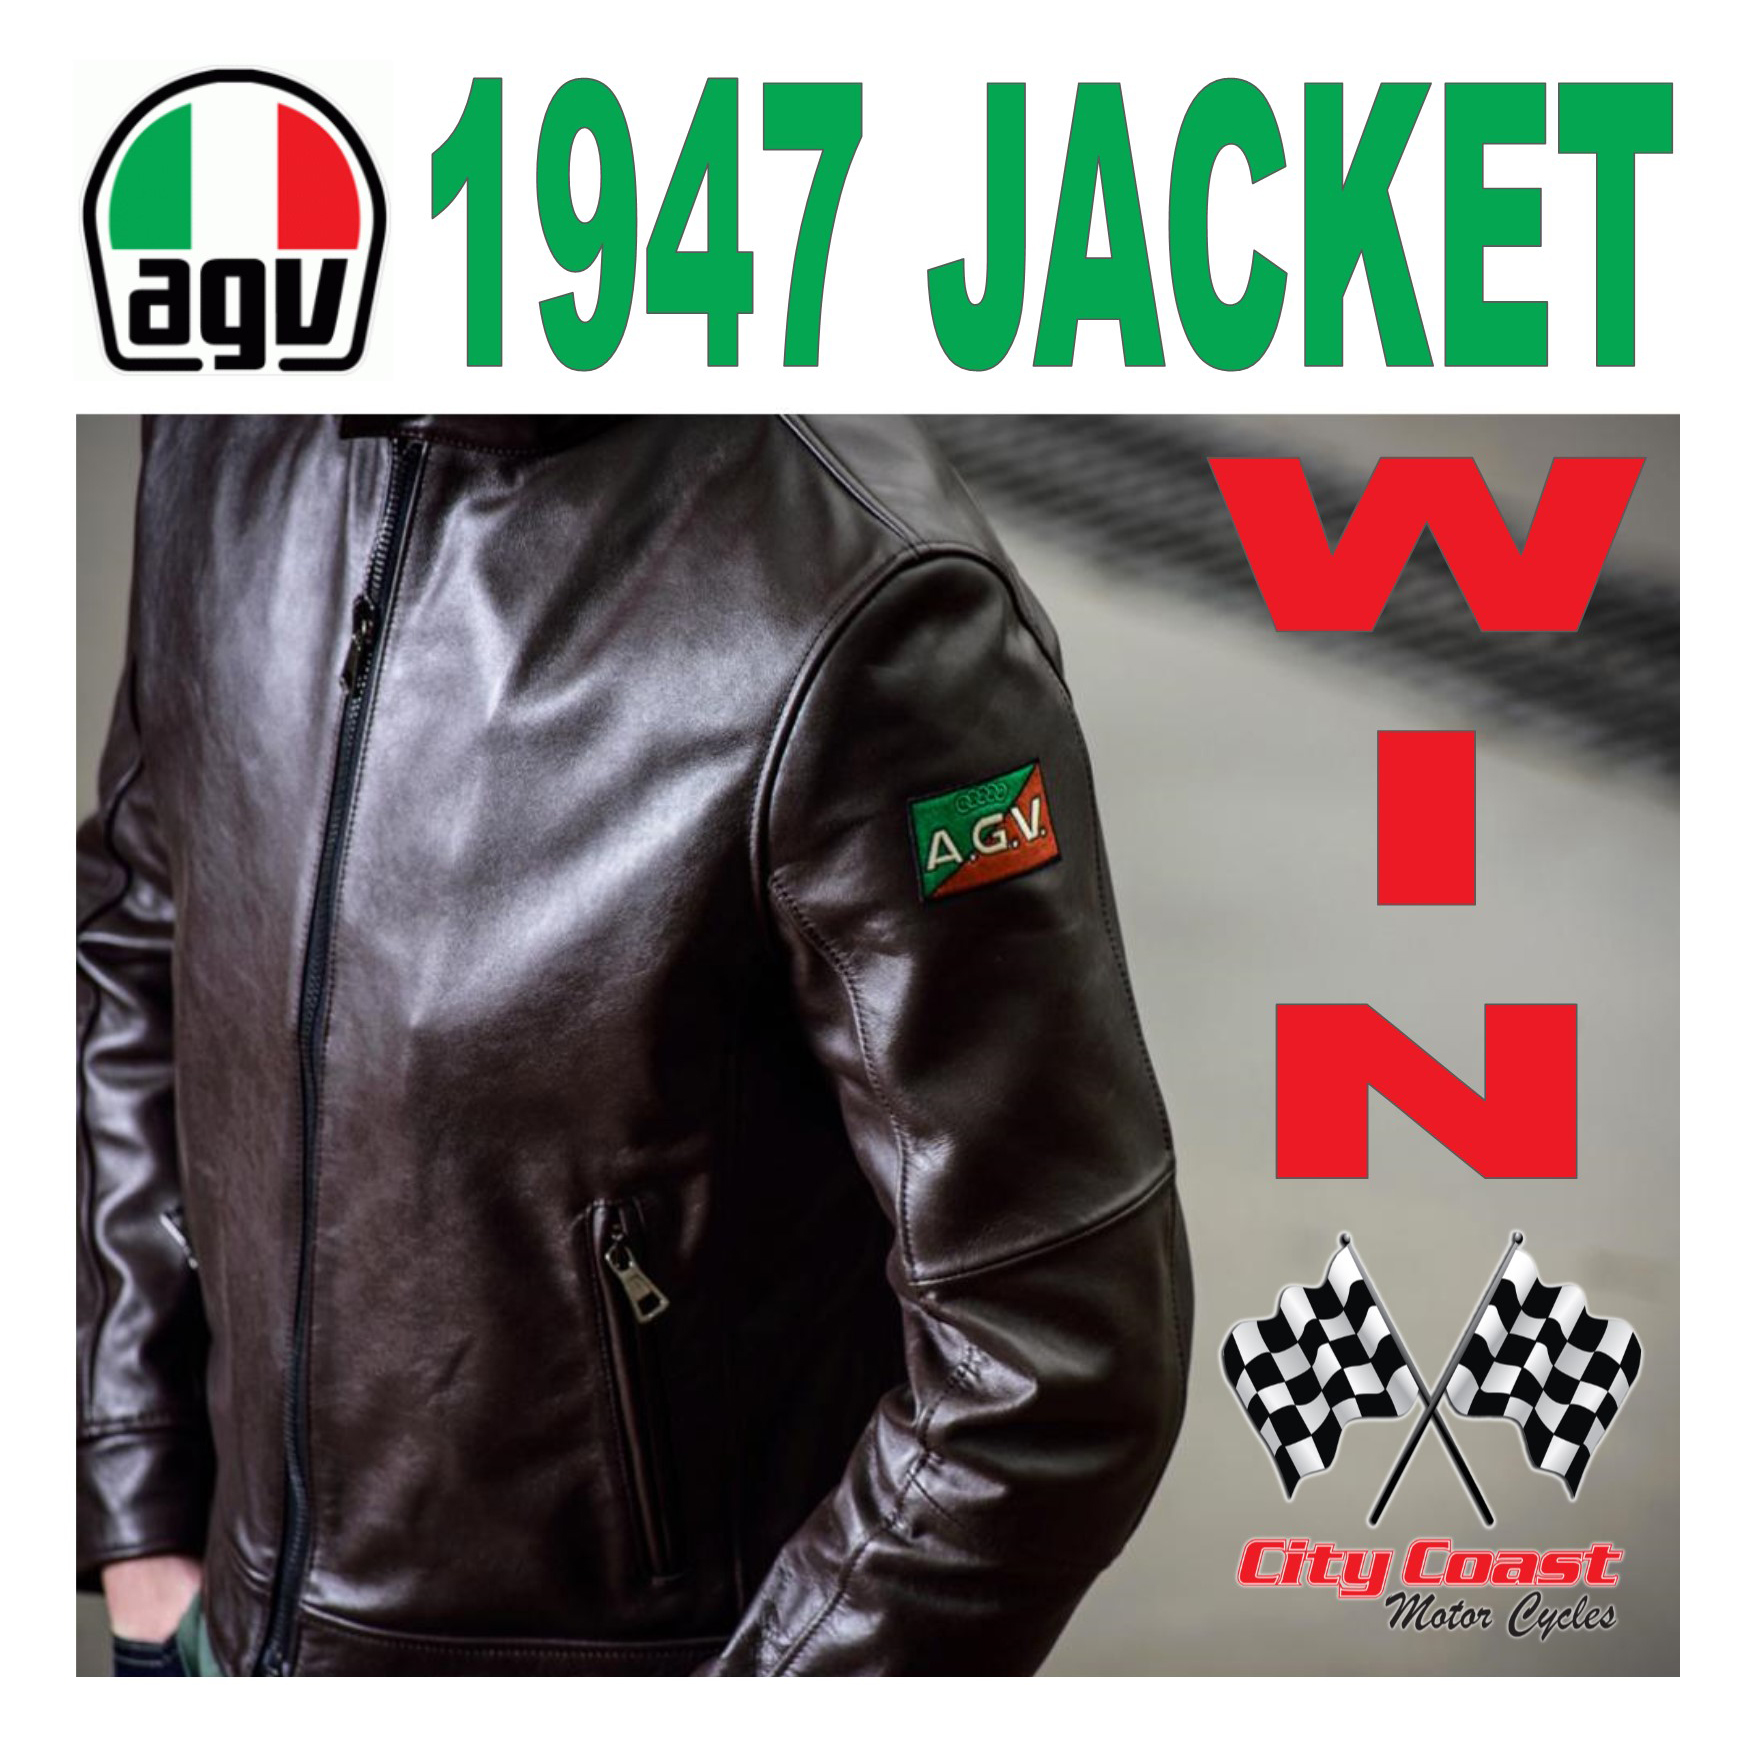 win an AGV 1947 jacket